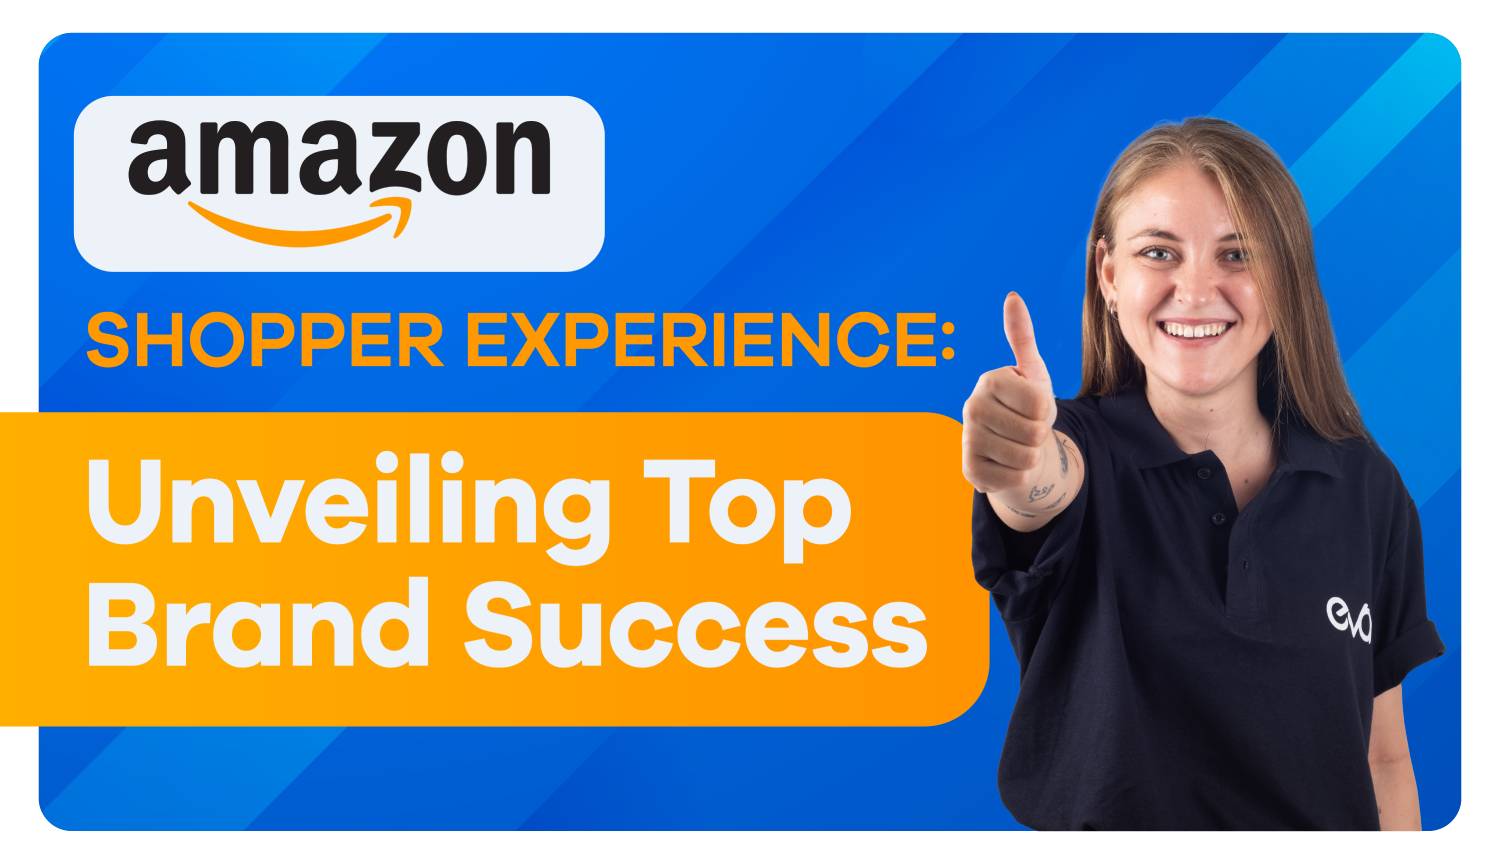 Amazon Success Stories: Top Brands & Shopper Experiences